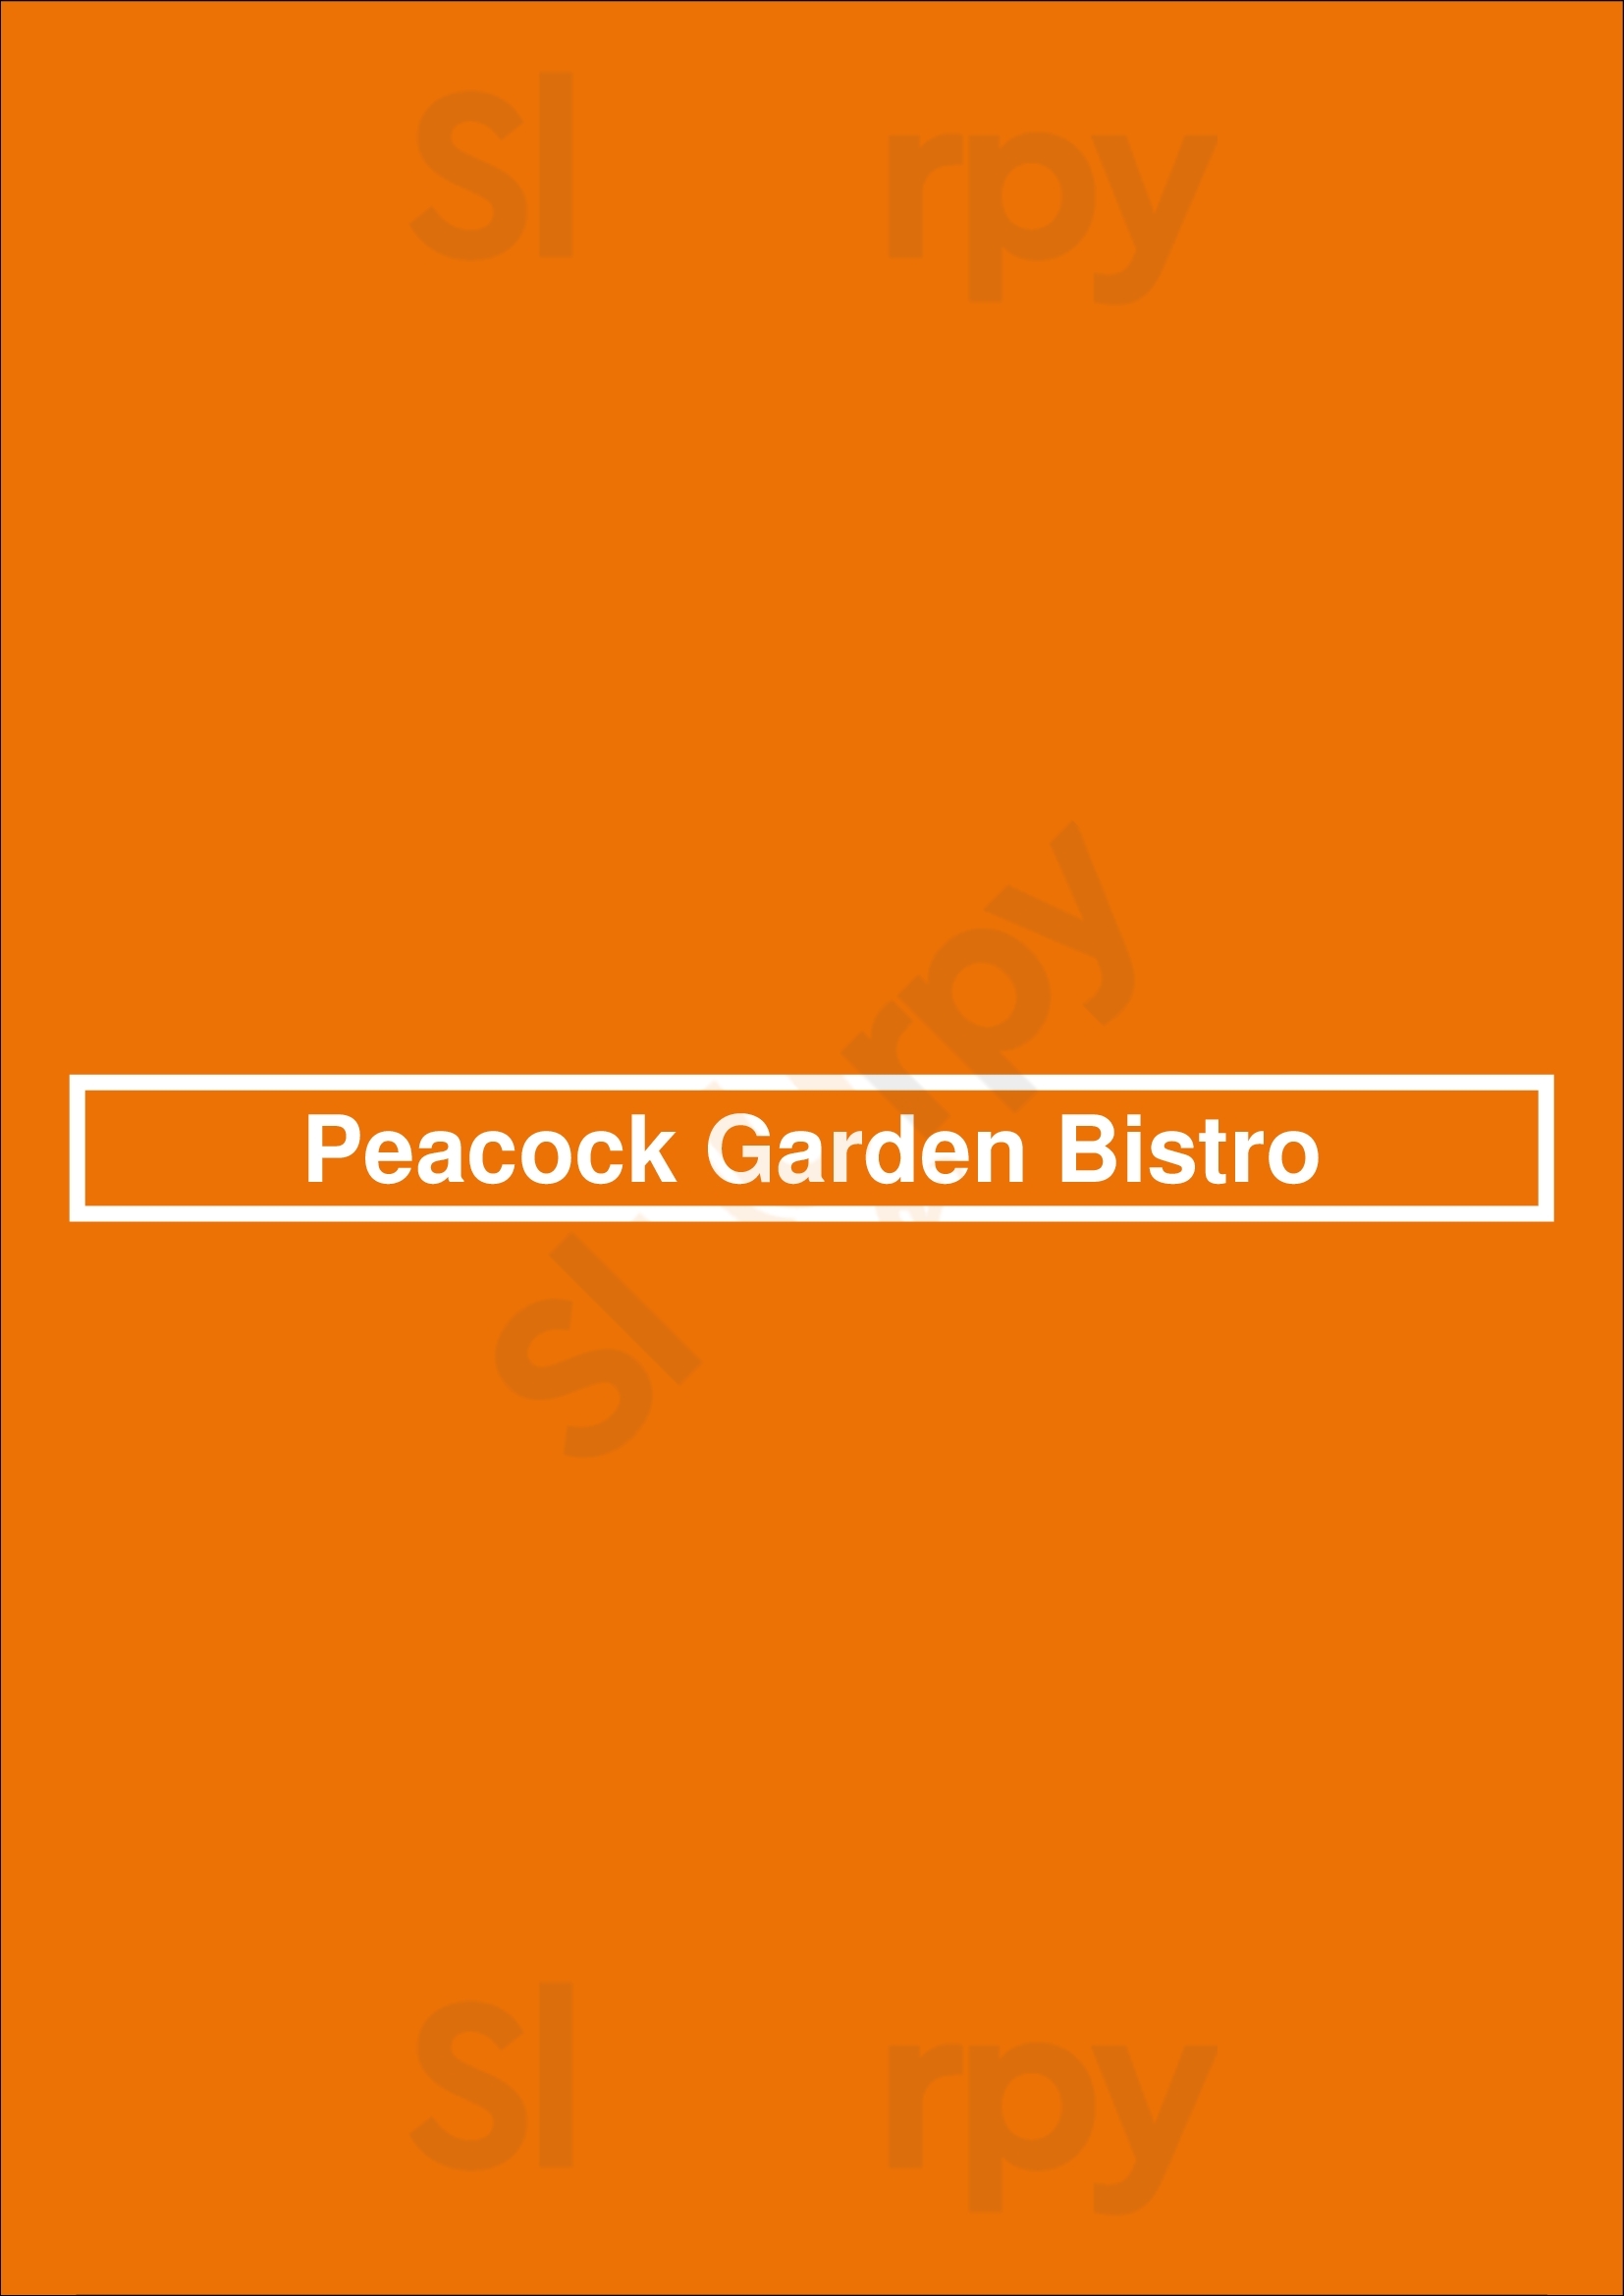 Peacock Garden Miami Menu - 1